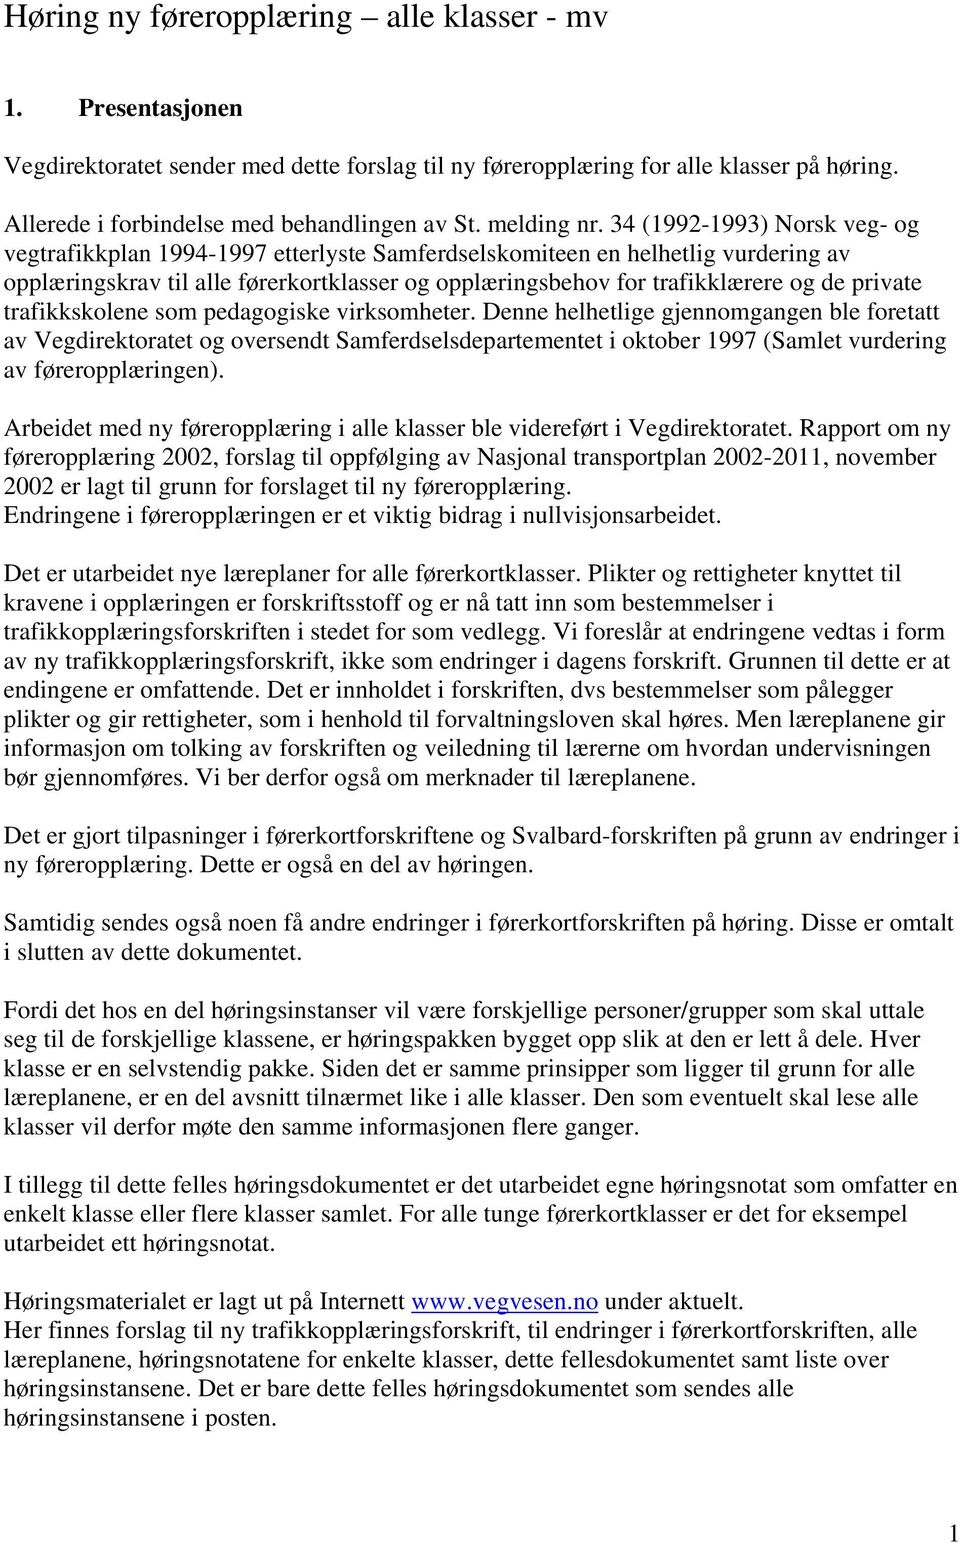 34 (1992-1993) Norsk veg- og vegtrafikkplan 1994-1997 etterlyste Samferdselskomiteen en helhetlig vurdering av opplæringskrav til alle førerkortklasser og opplæringsbehov for trafikklærere og de